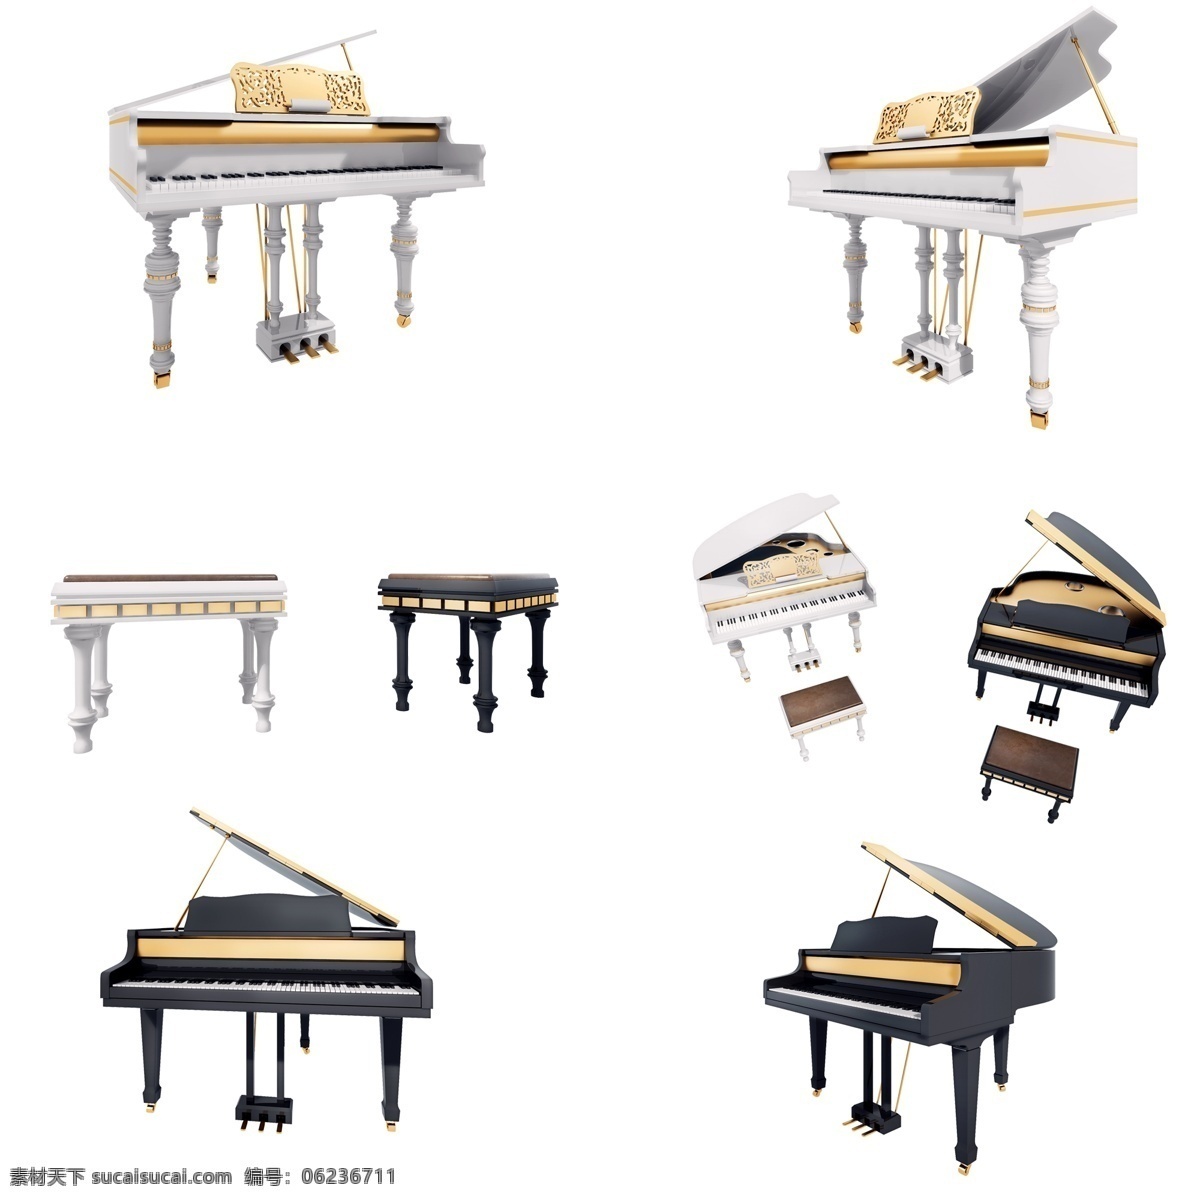 质感 立体 钢琴 套 图 白色钢琴 黑色钢琴 钢琴椅 仿真 精致 镀金 3d 创意 套图 png图